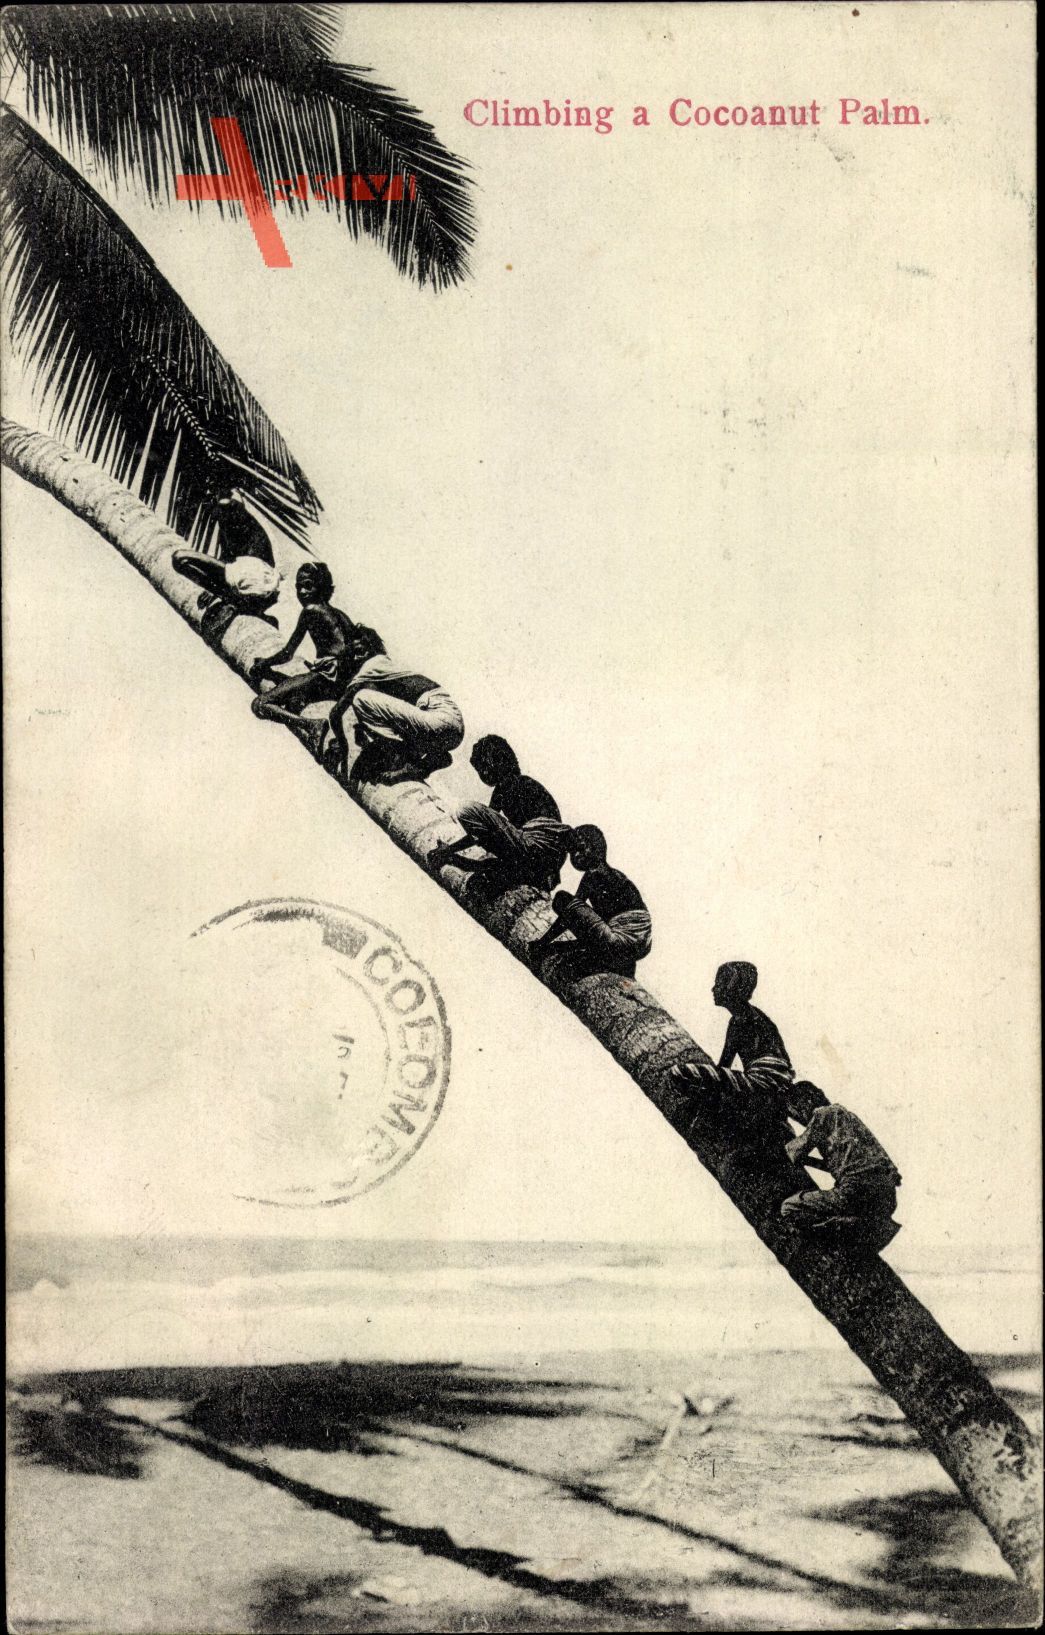 Ceylon Sri Lanka, Climbing a Cocoanut Palm